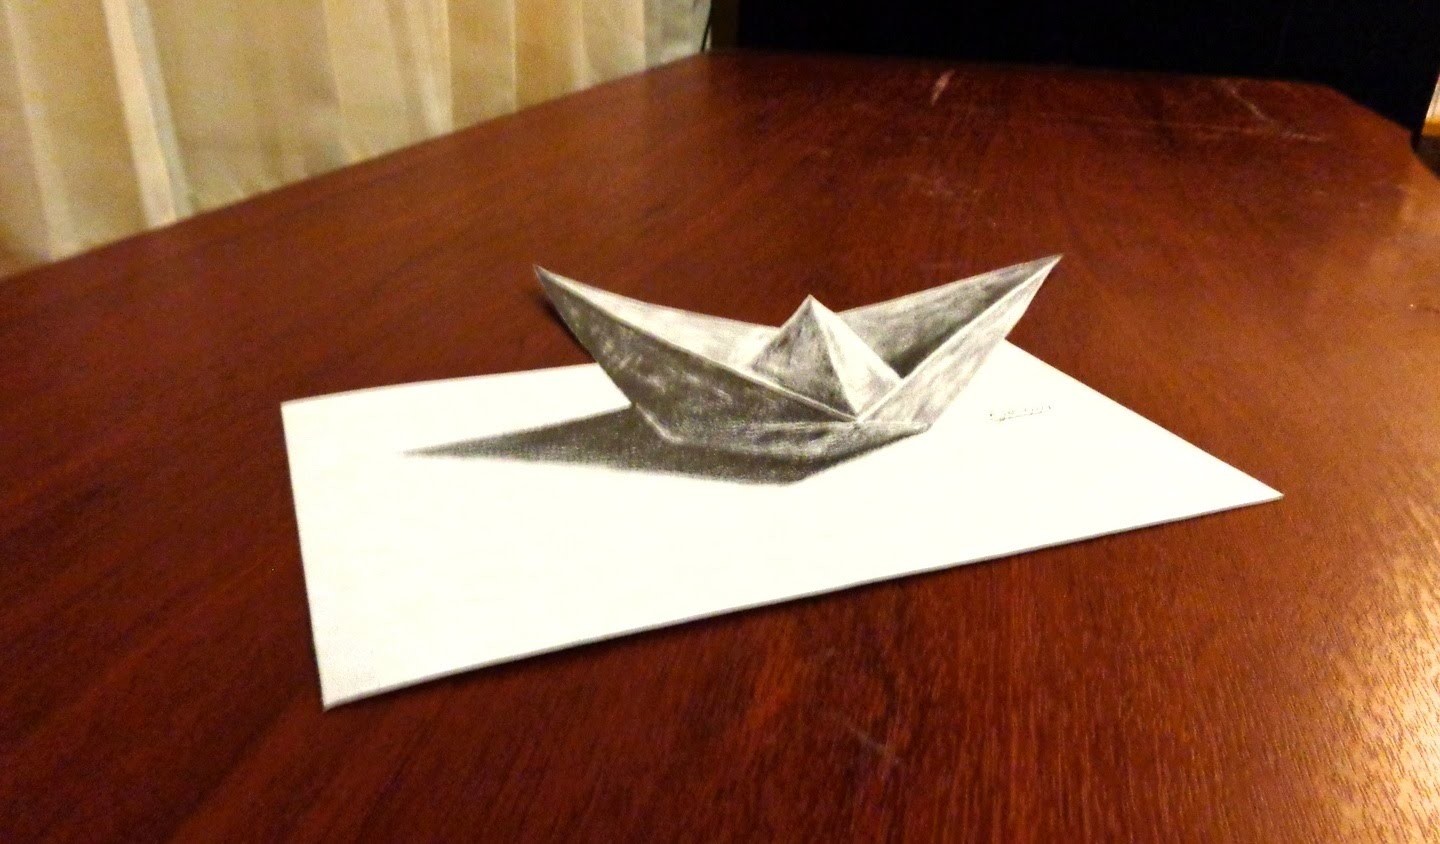 ILUSIÓN ÓPTICA - Barco de papel - Dibujo Anamorfico 3D | Selbor